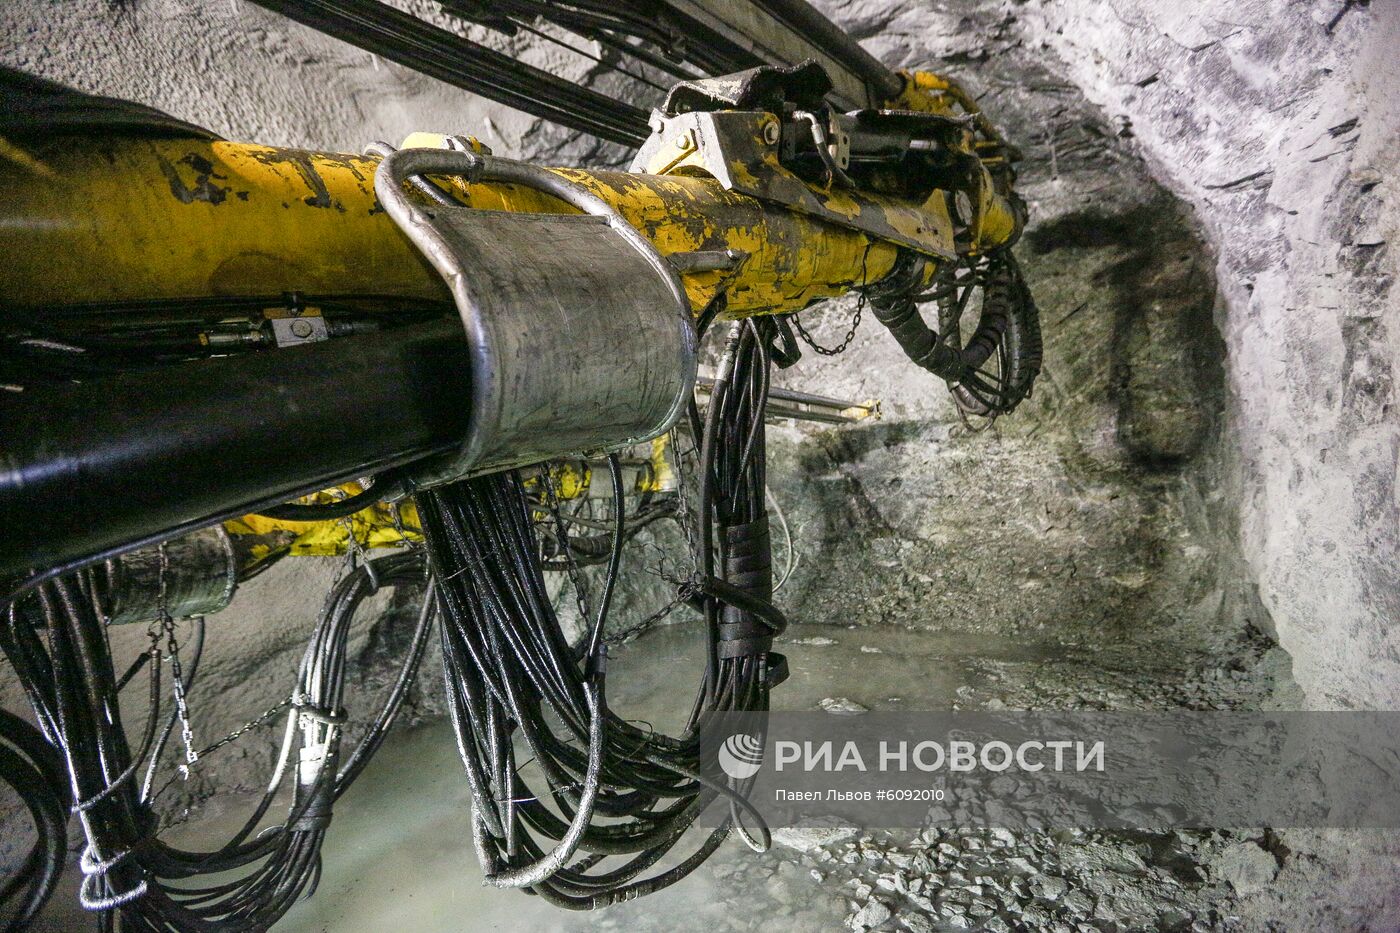 Расвумчоррский рудник  в Мурманской области 